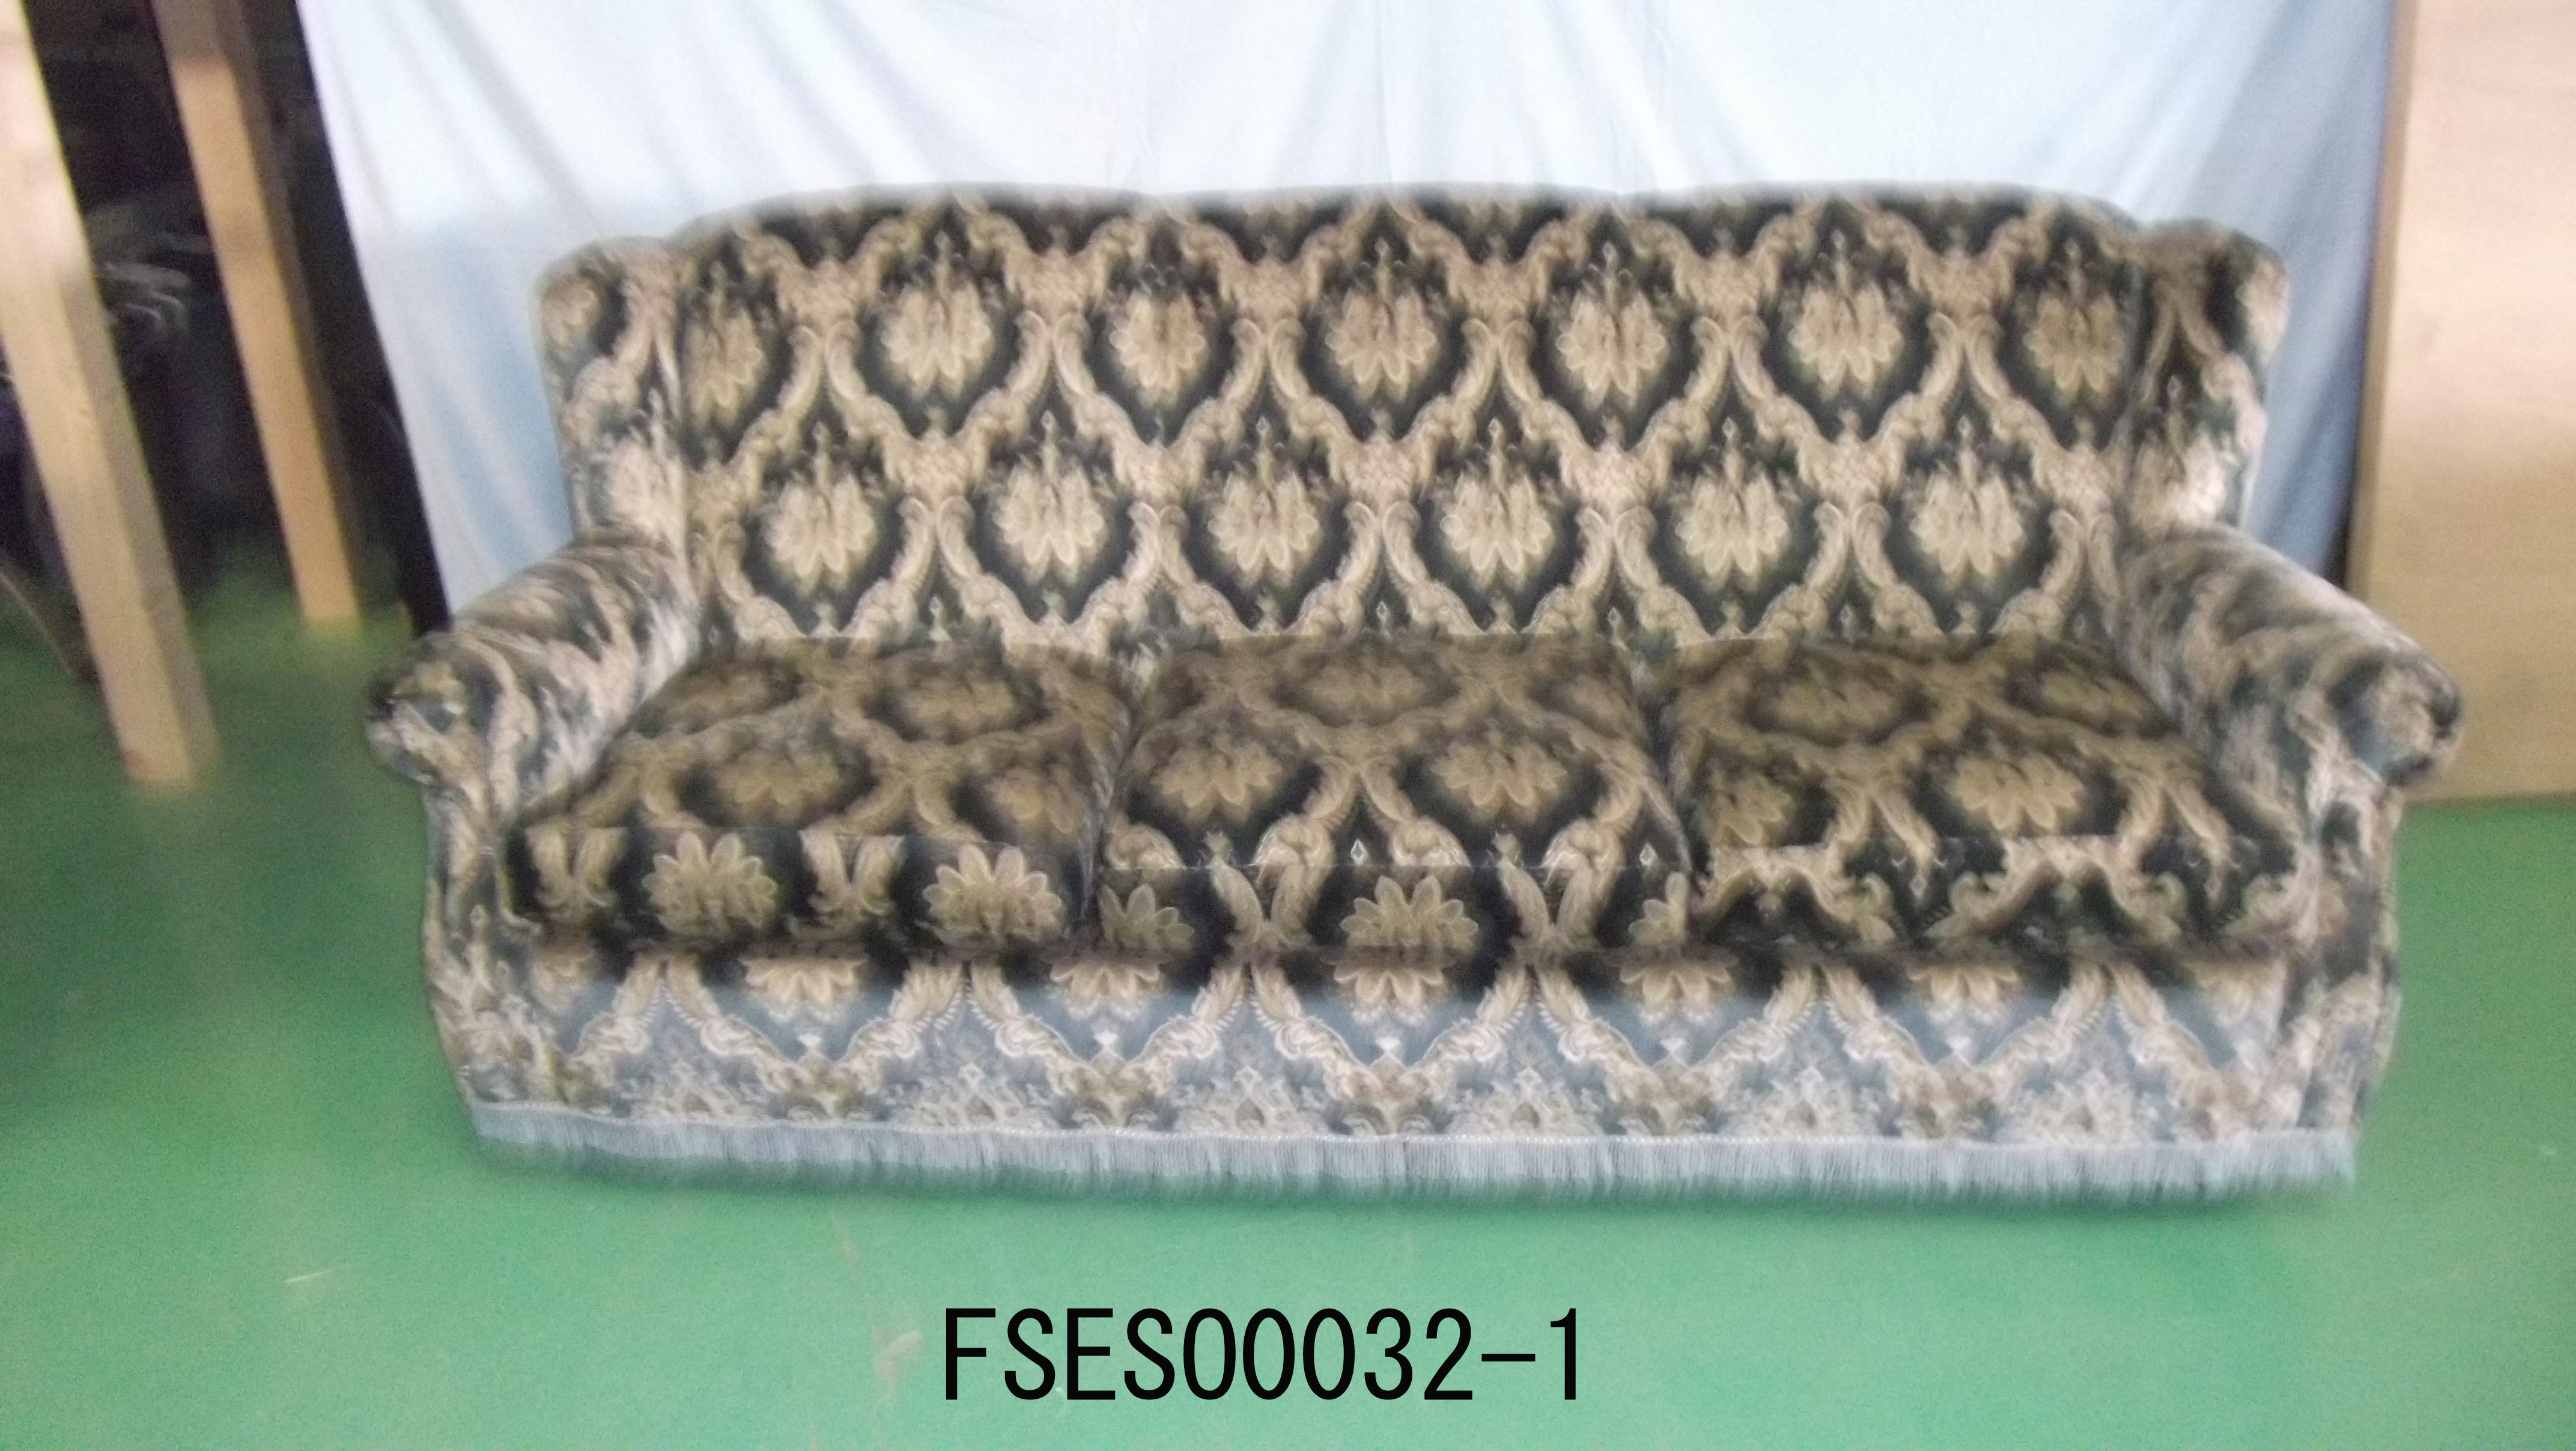 FSESO0032-1